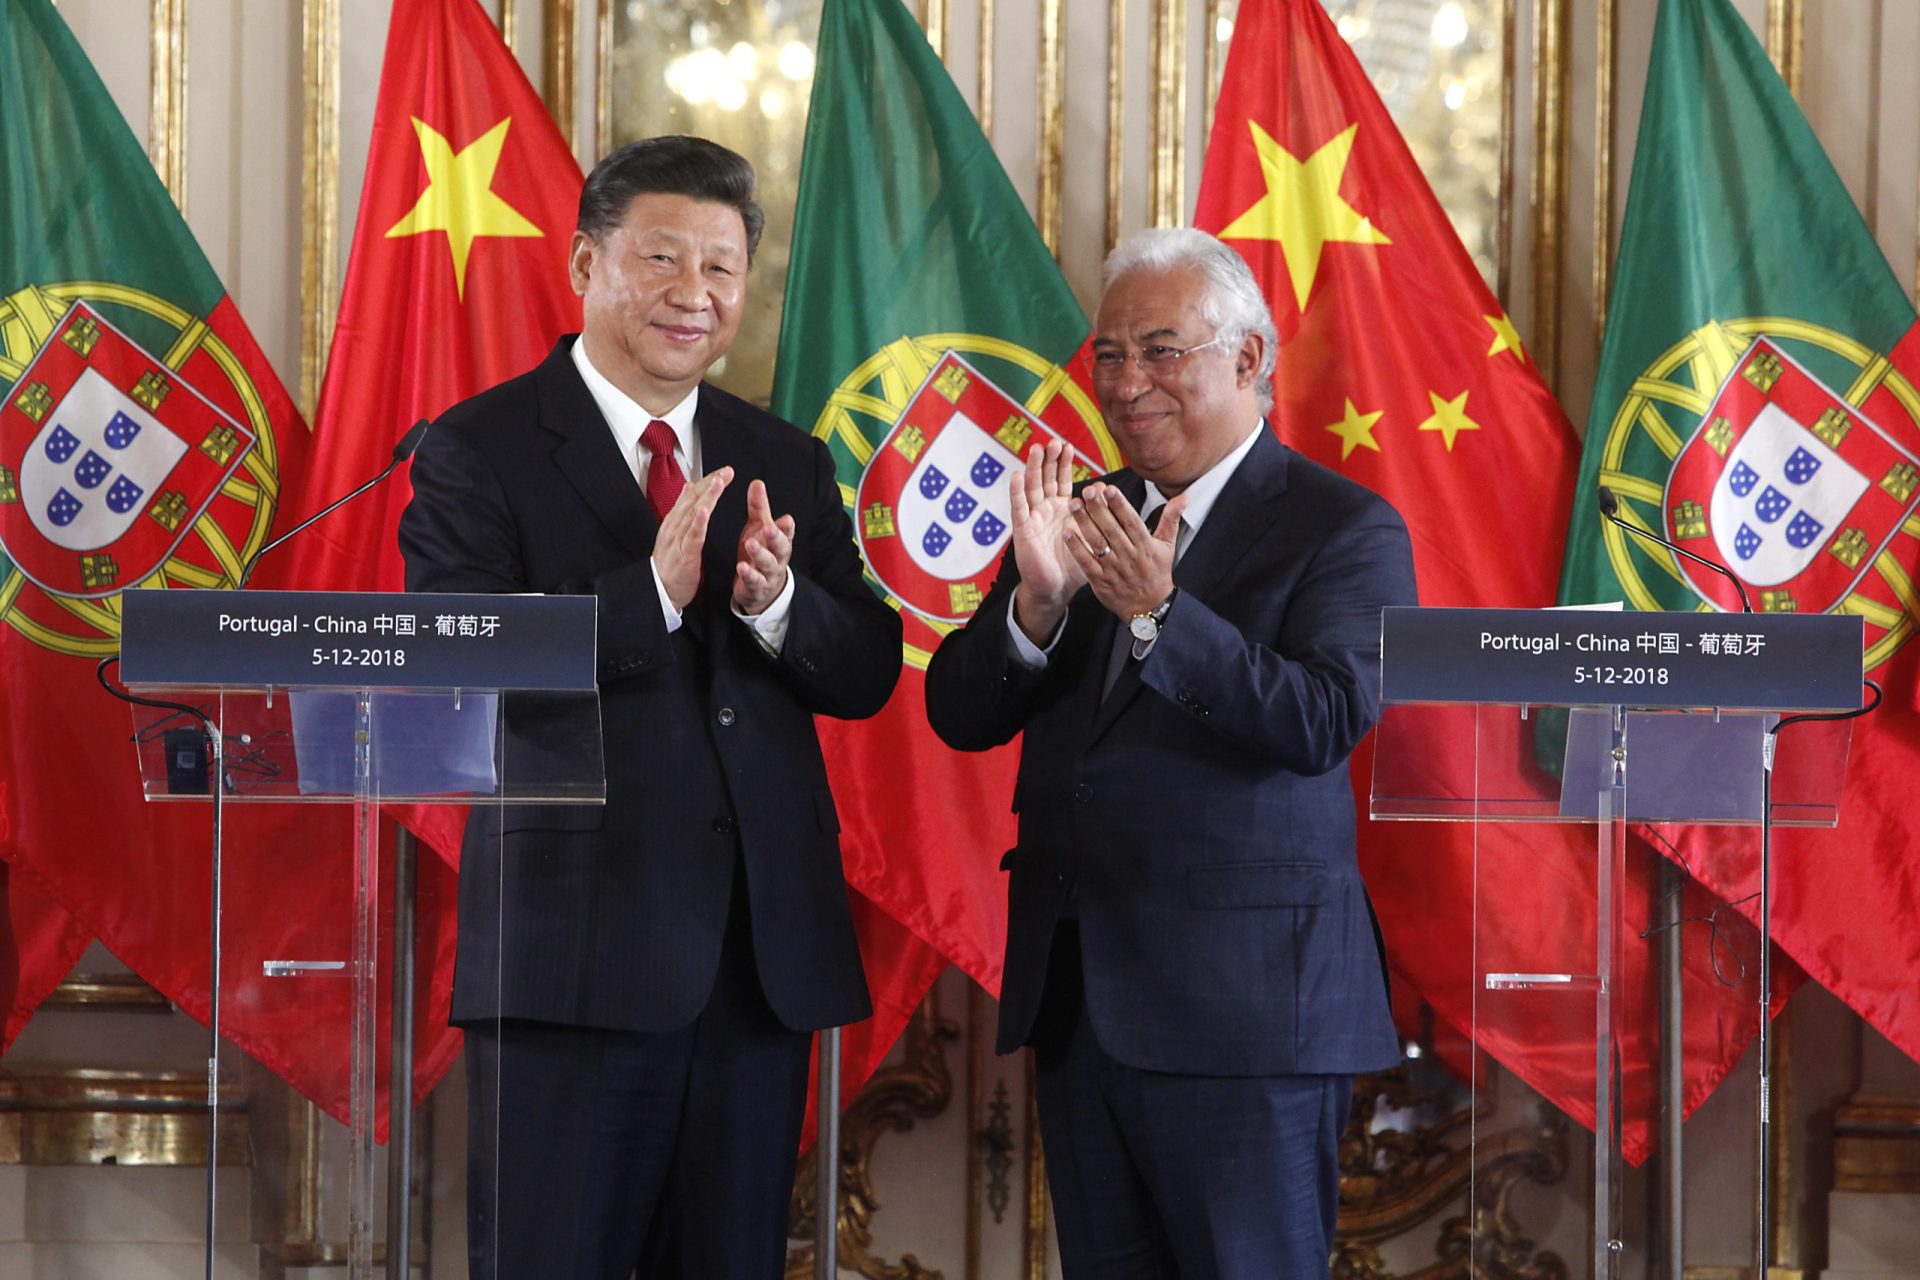 Costa diz que relações com Pequim estão no “seu melhor”